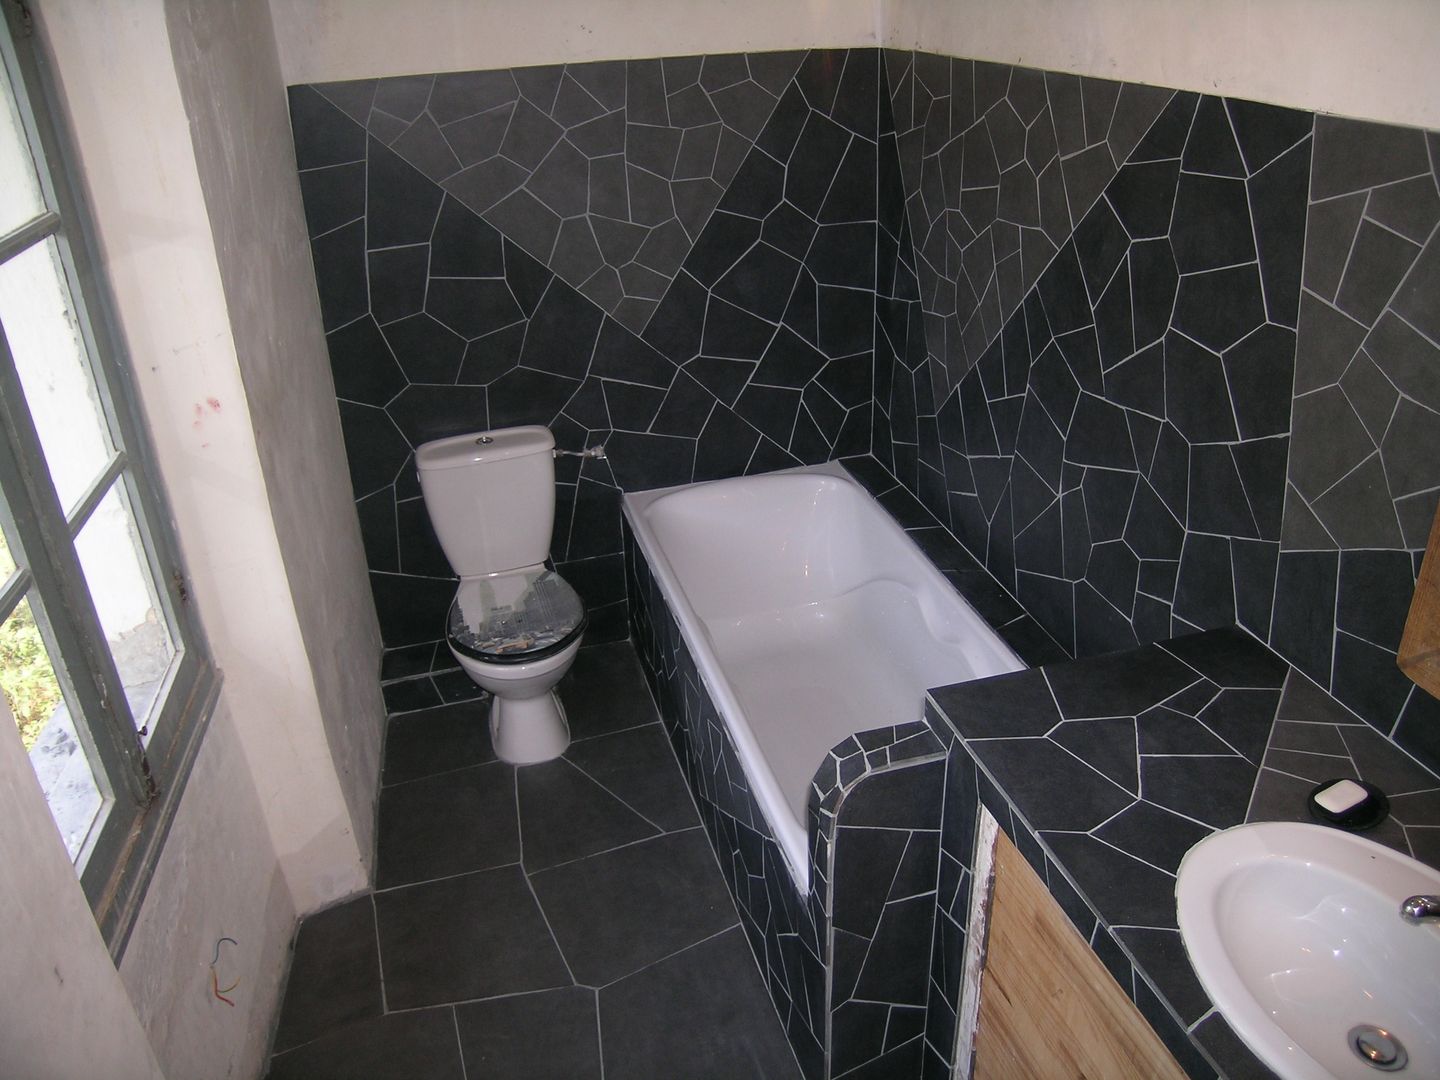 Mozaique, Moz-art mosaique Moz-art mosaique Ванная комната в стиле модерн Аксессуары